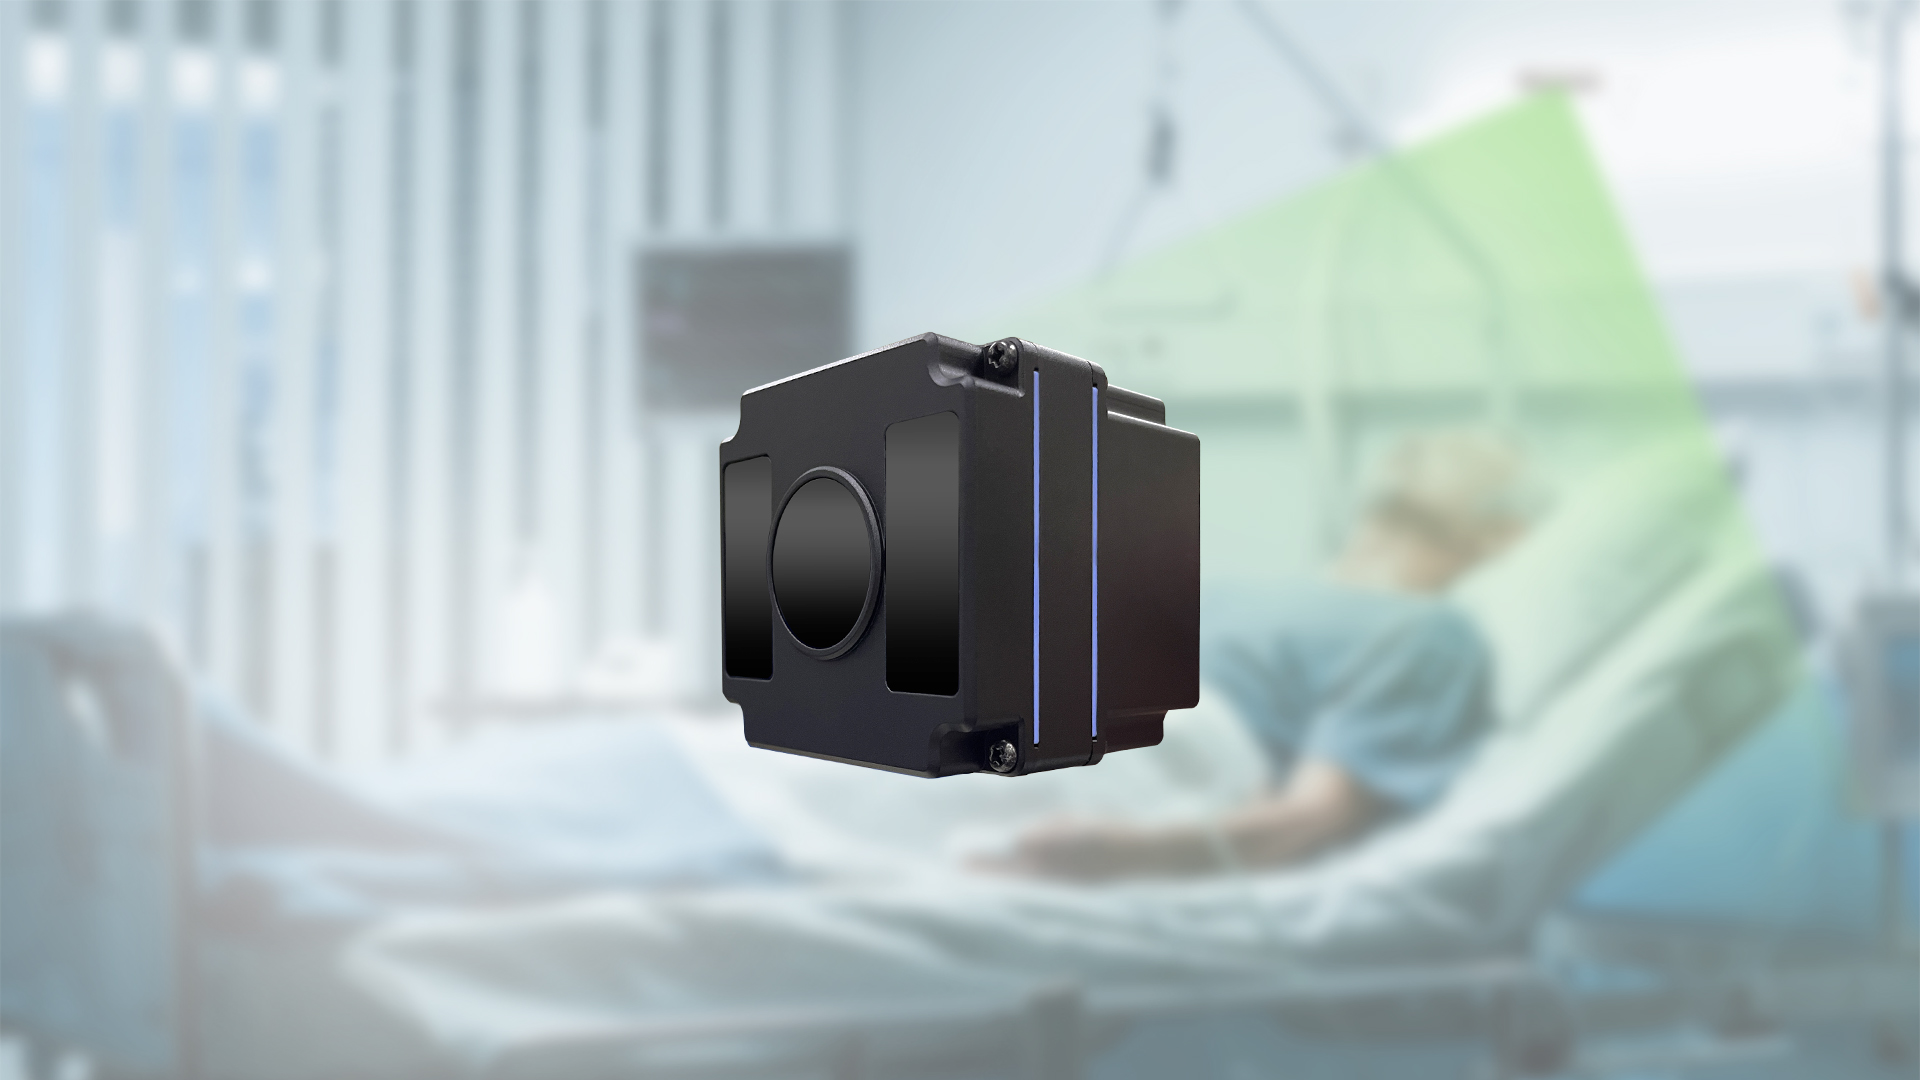 AI Health Care Time-of-Flight  3D Depth Sensing Camera